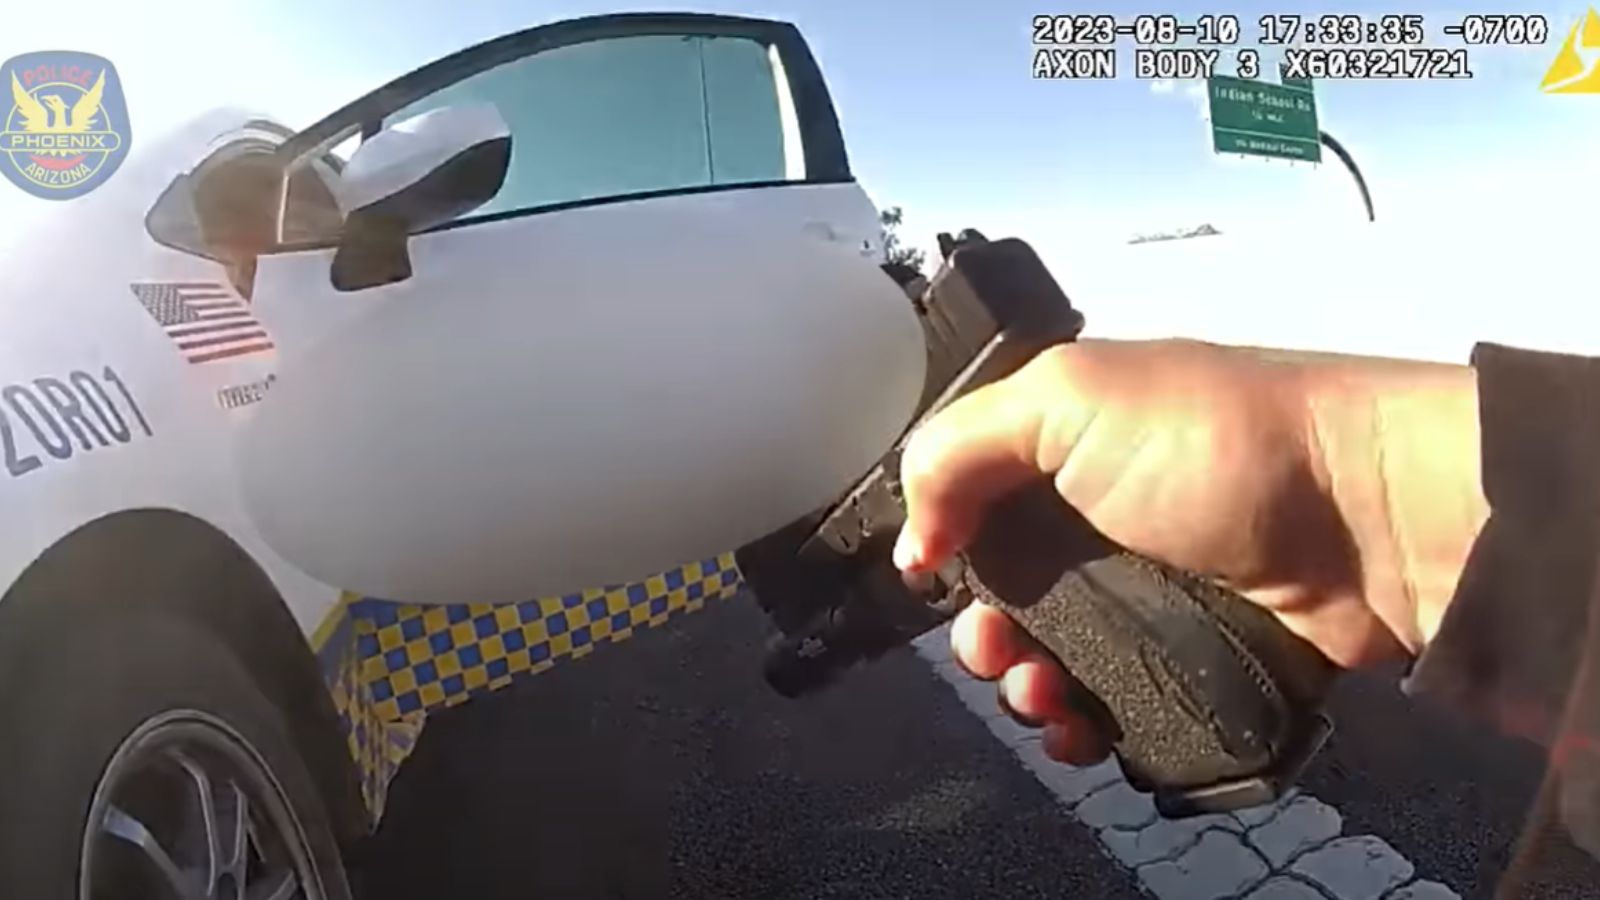 Phoenix police share body camera footage of Arizona man's carjacking spree